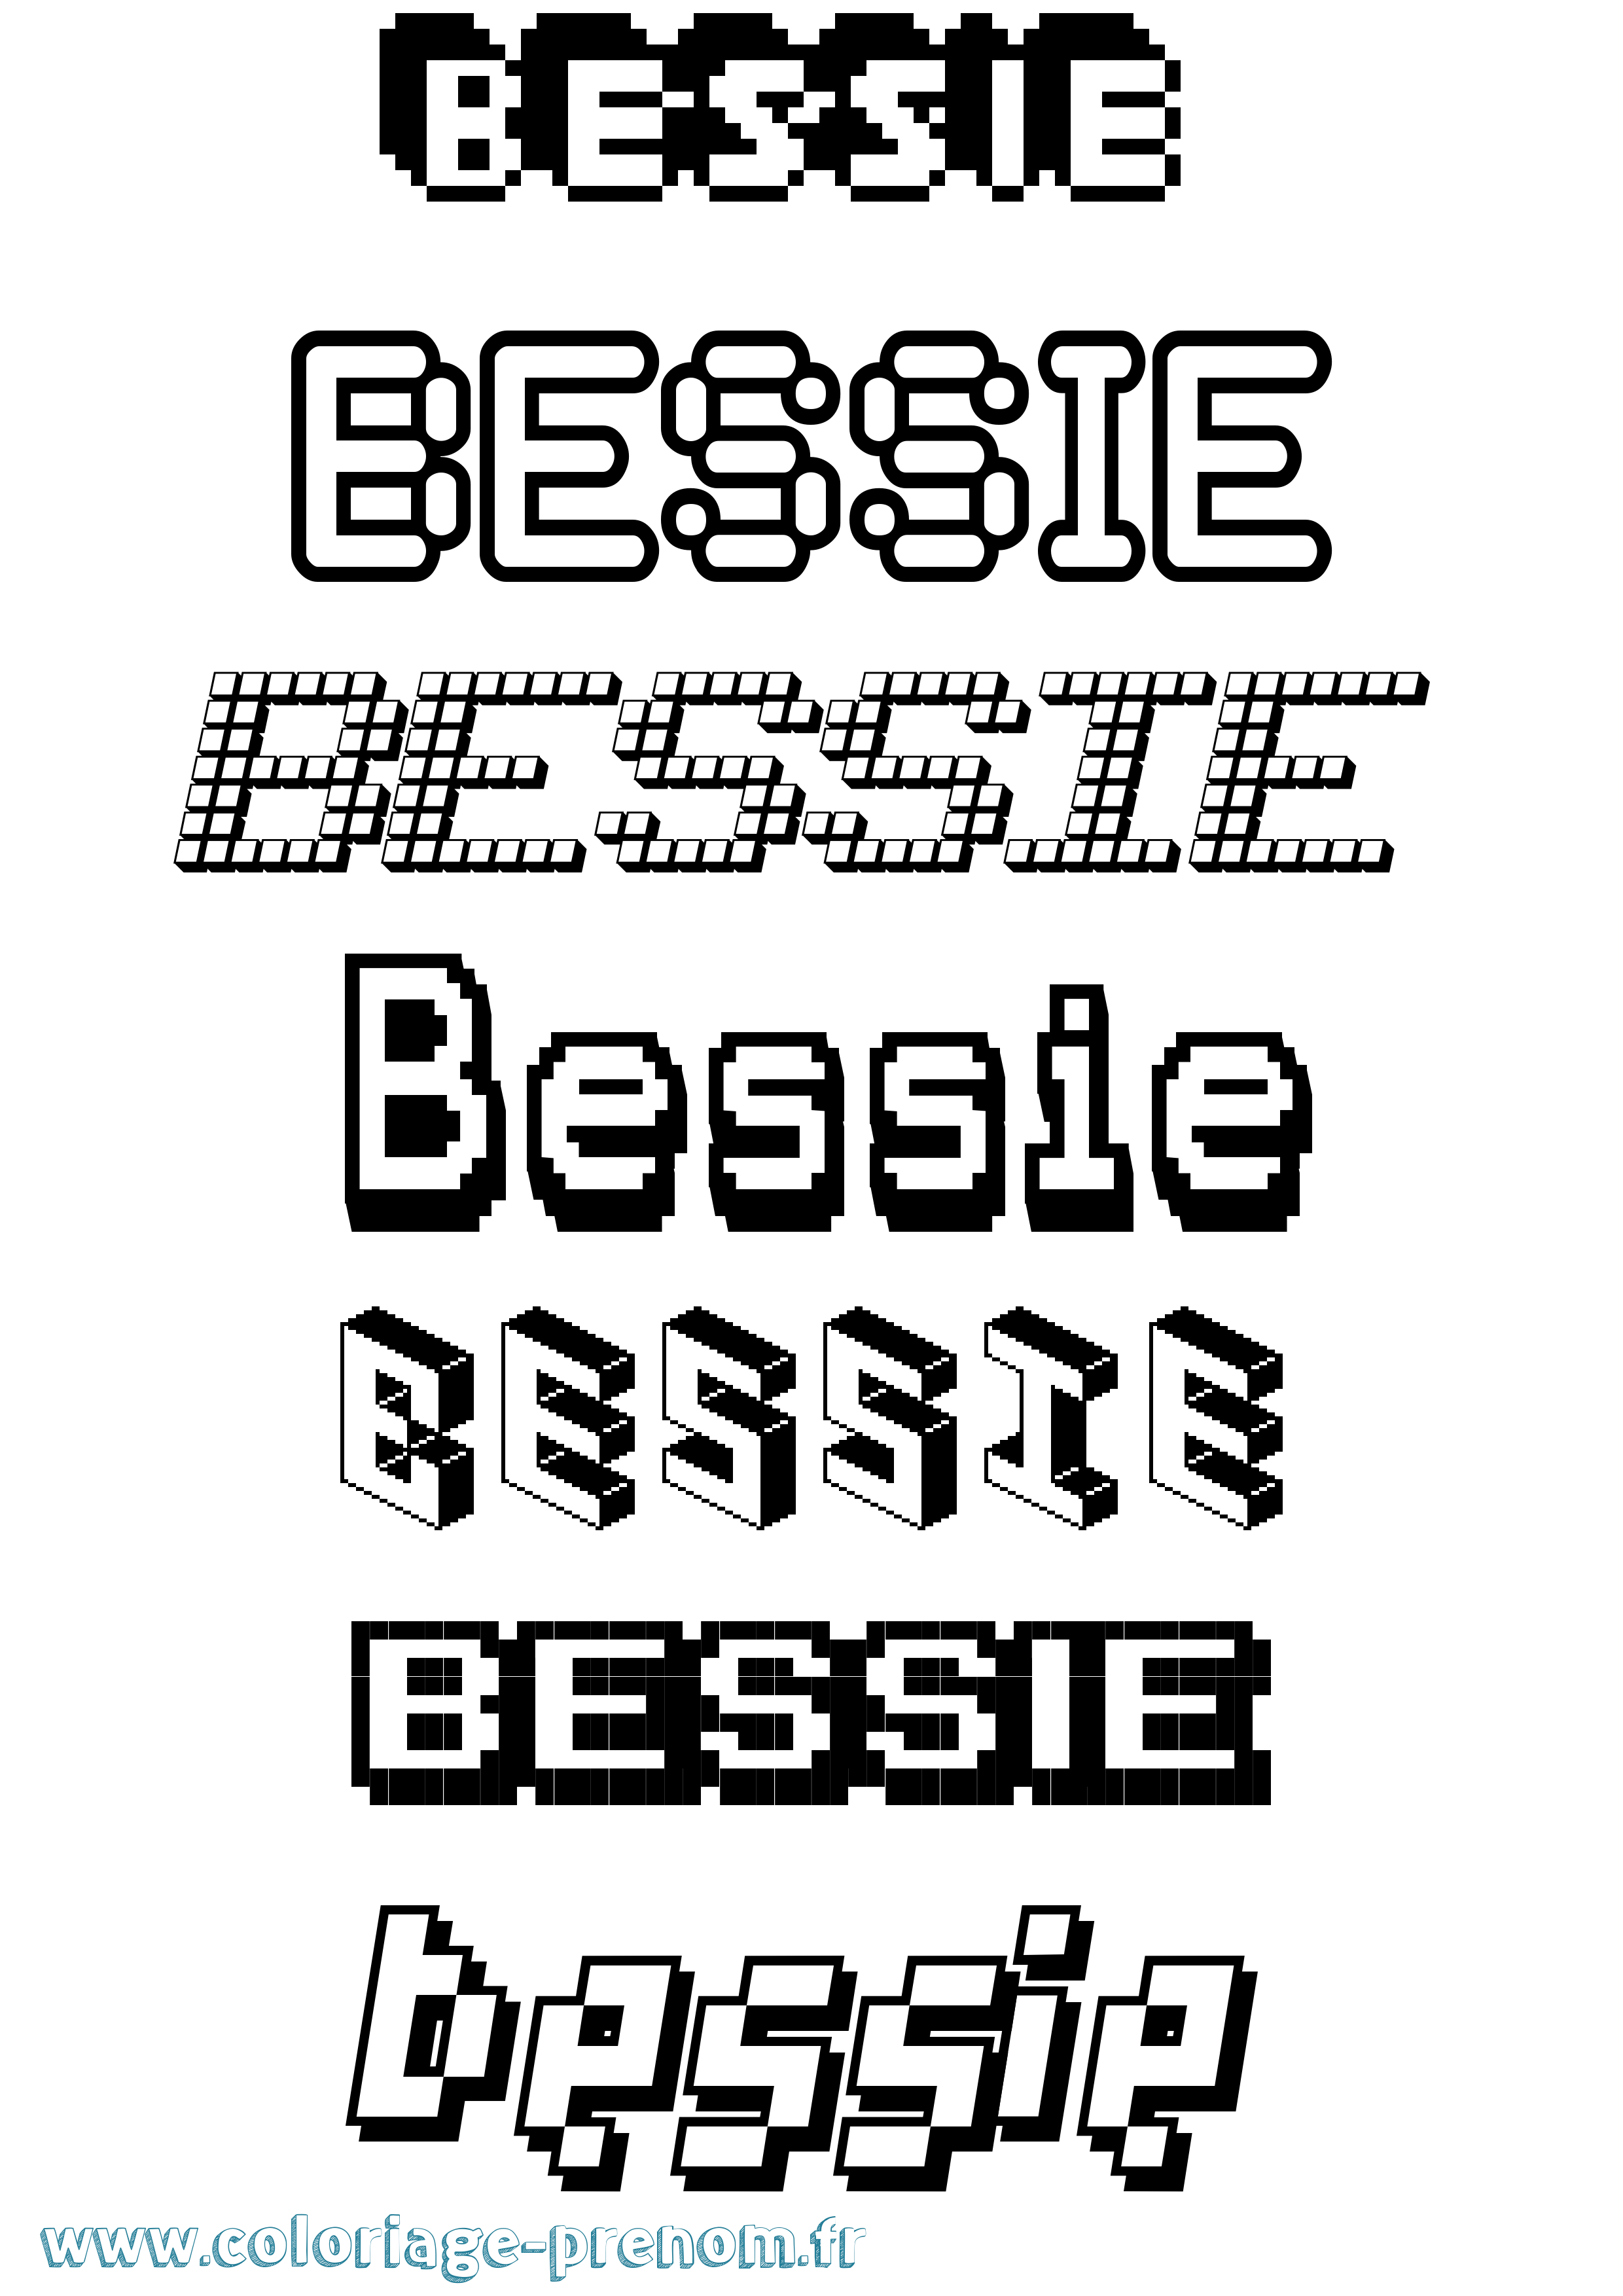 Coloriage prénom Bessie Pixel